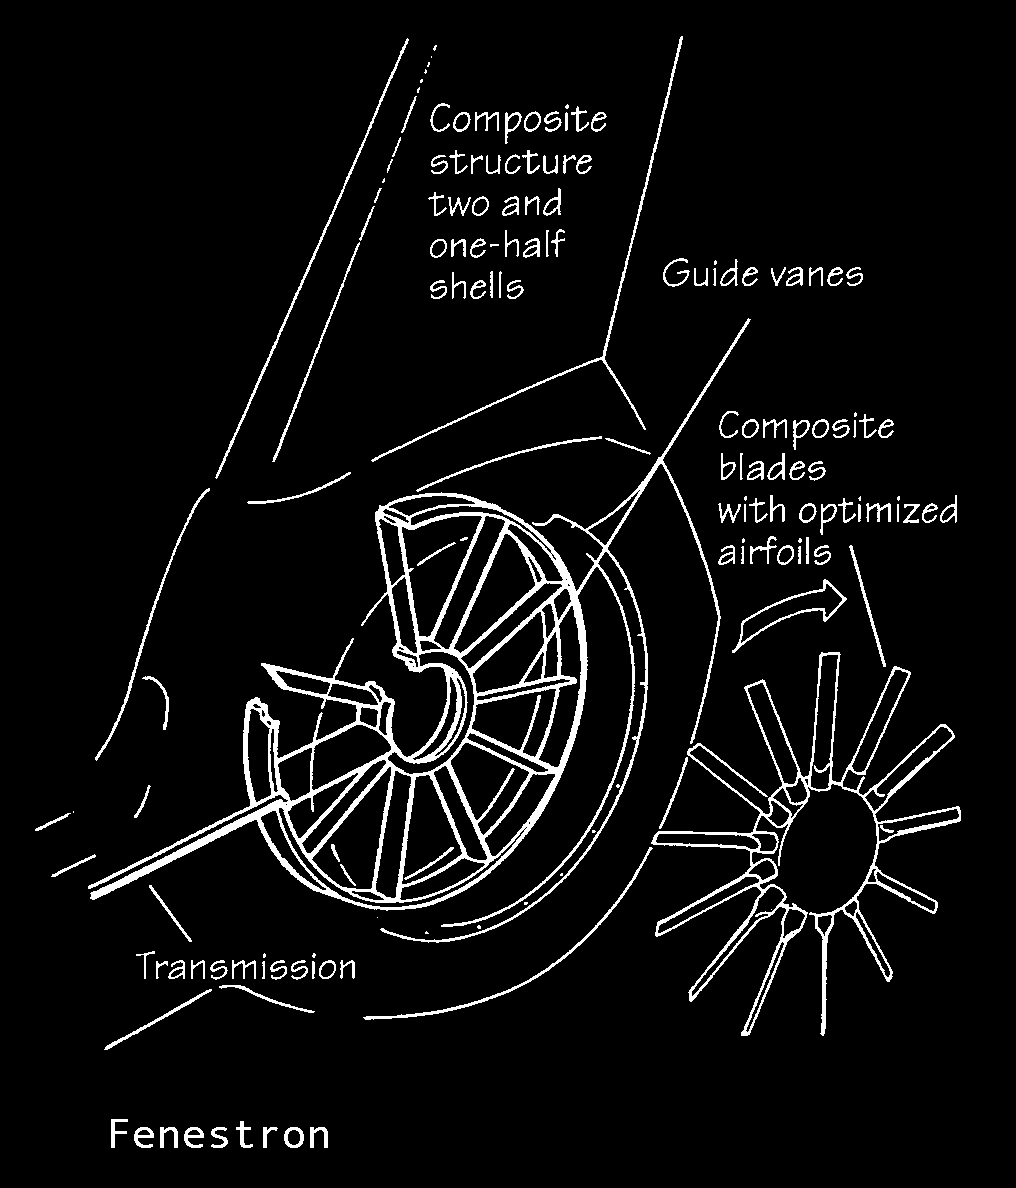 Der Fenestronrotor {französisch "Fenestron" = kleines Fenster } des Eurocopter EC 135 dreht mit 3580 RPM. Ein Stator trägt das Rotorgetriebe. Beide besitzen je 10 verwundene Blätter.